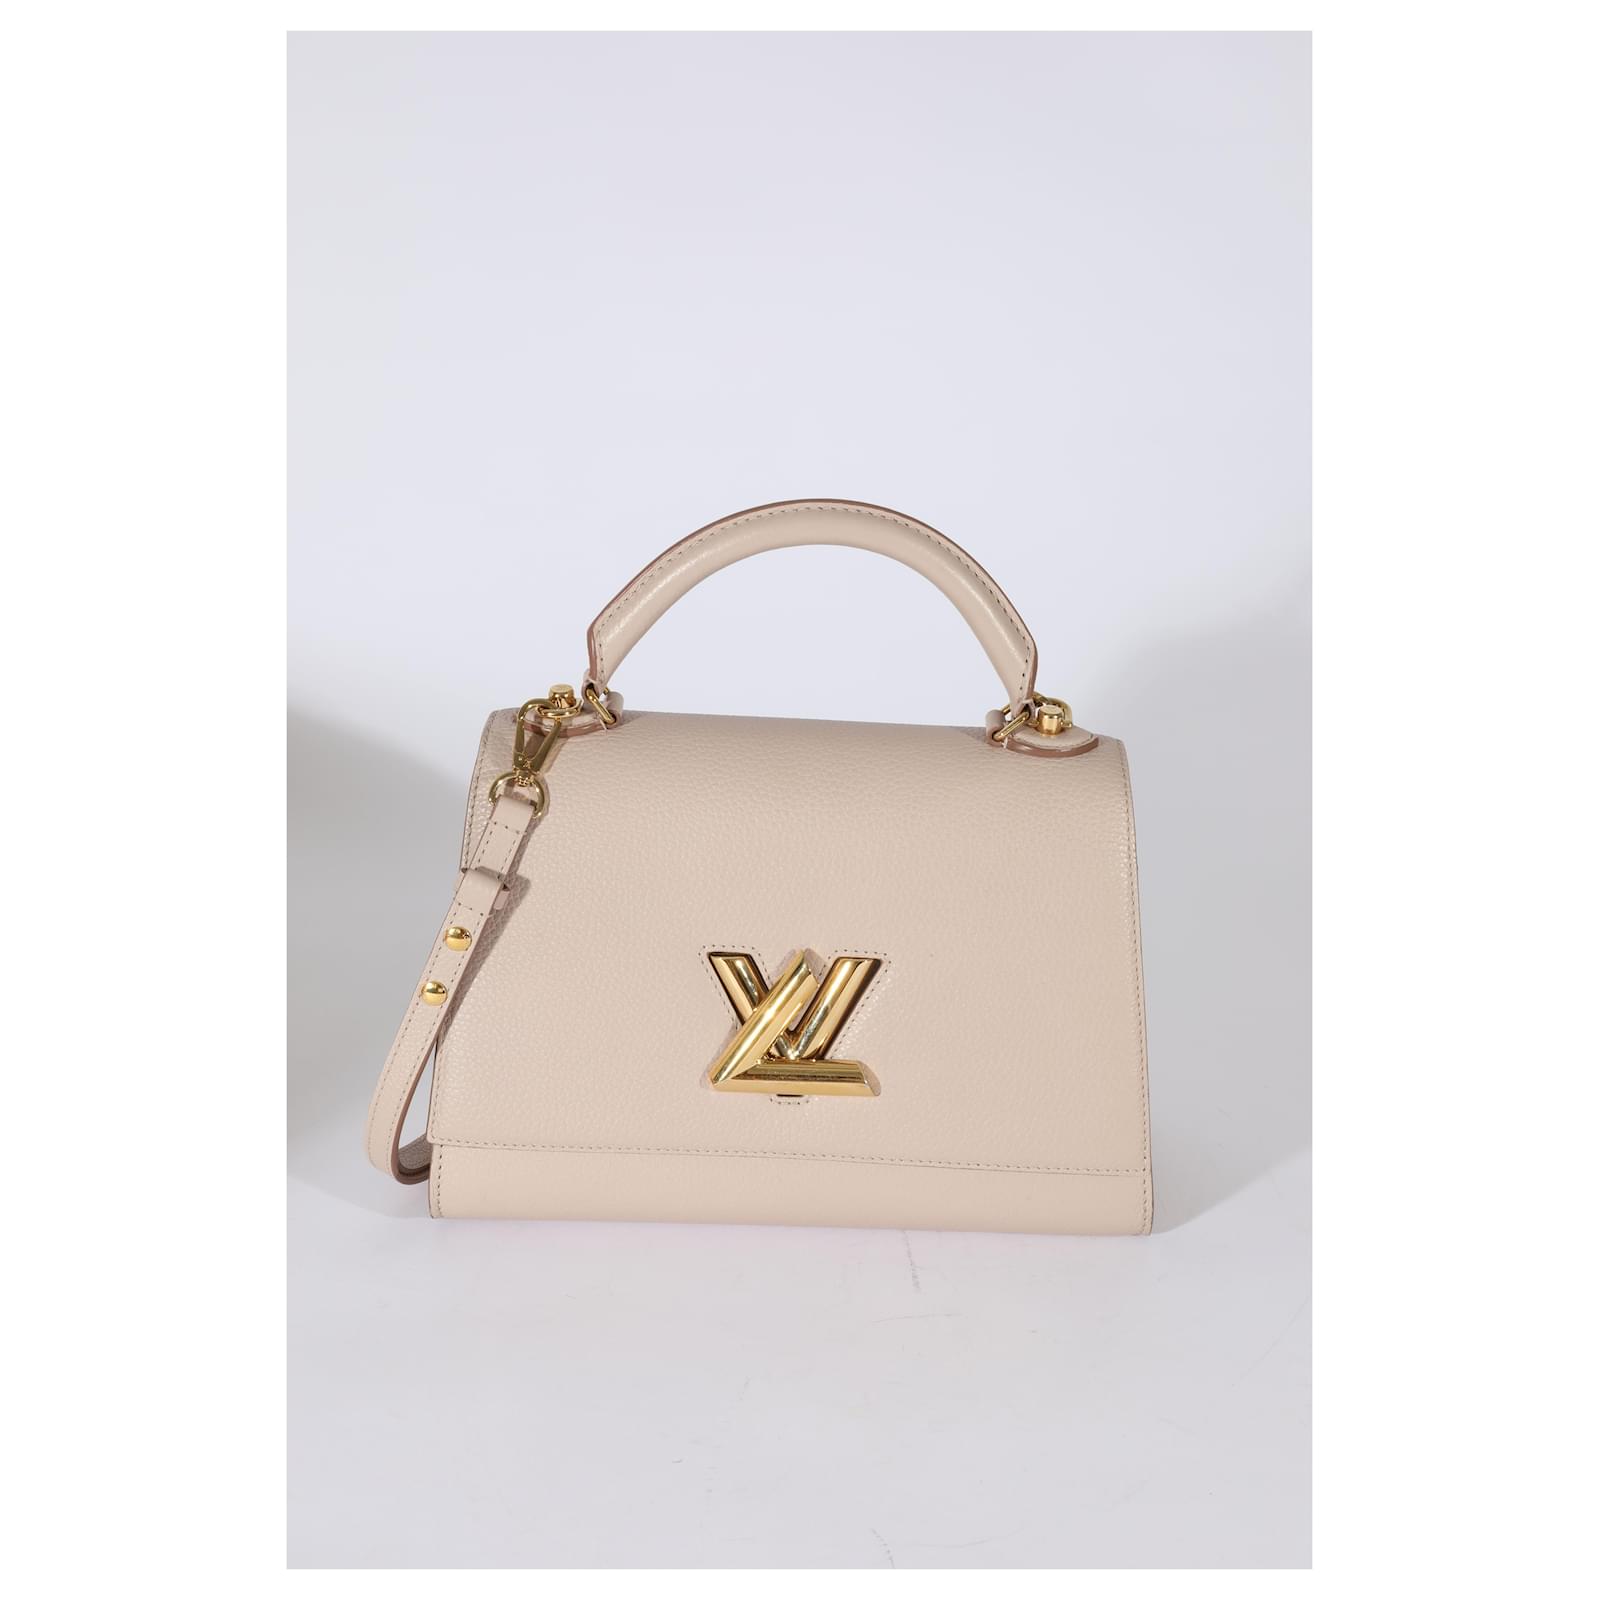 Louis Vuitton x Nigo Straps Trunk White in Leather with Gold-tone - US